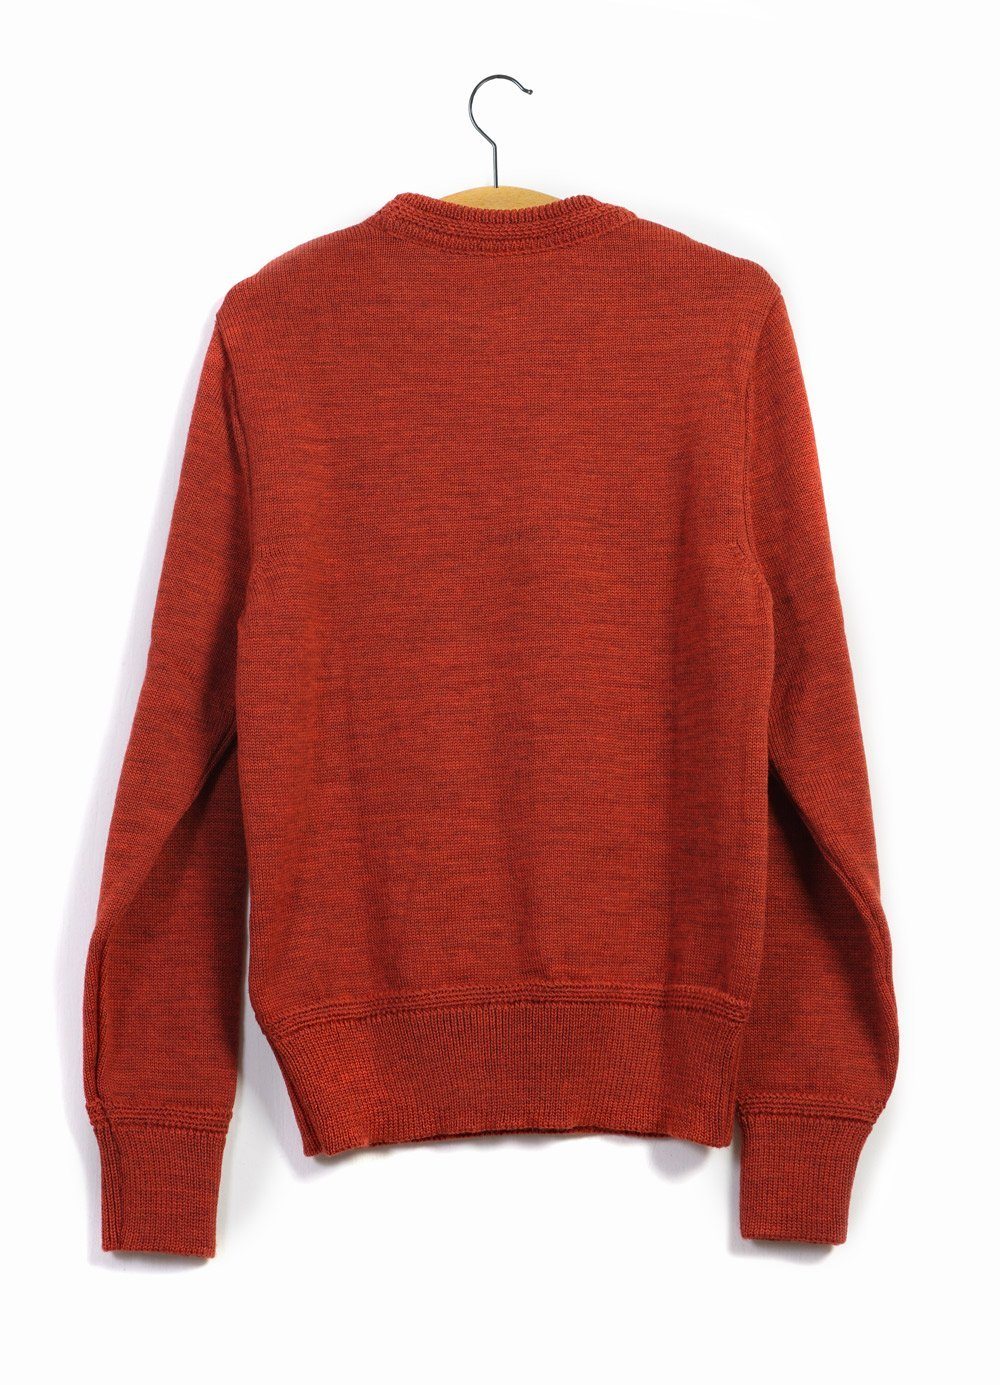 RAGNAR | Knitted Wool Sweater | Fire | €270 -HANSEN Garments- HANSEN Garments